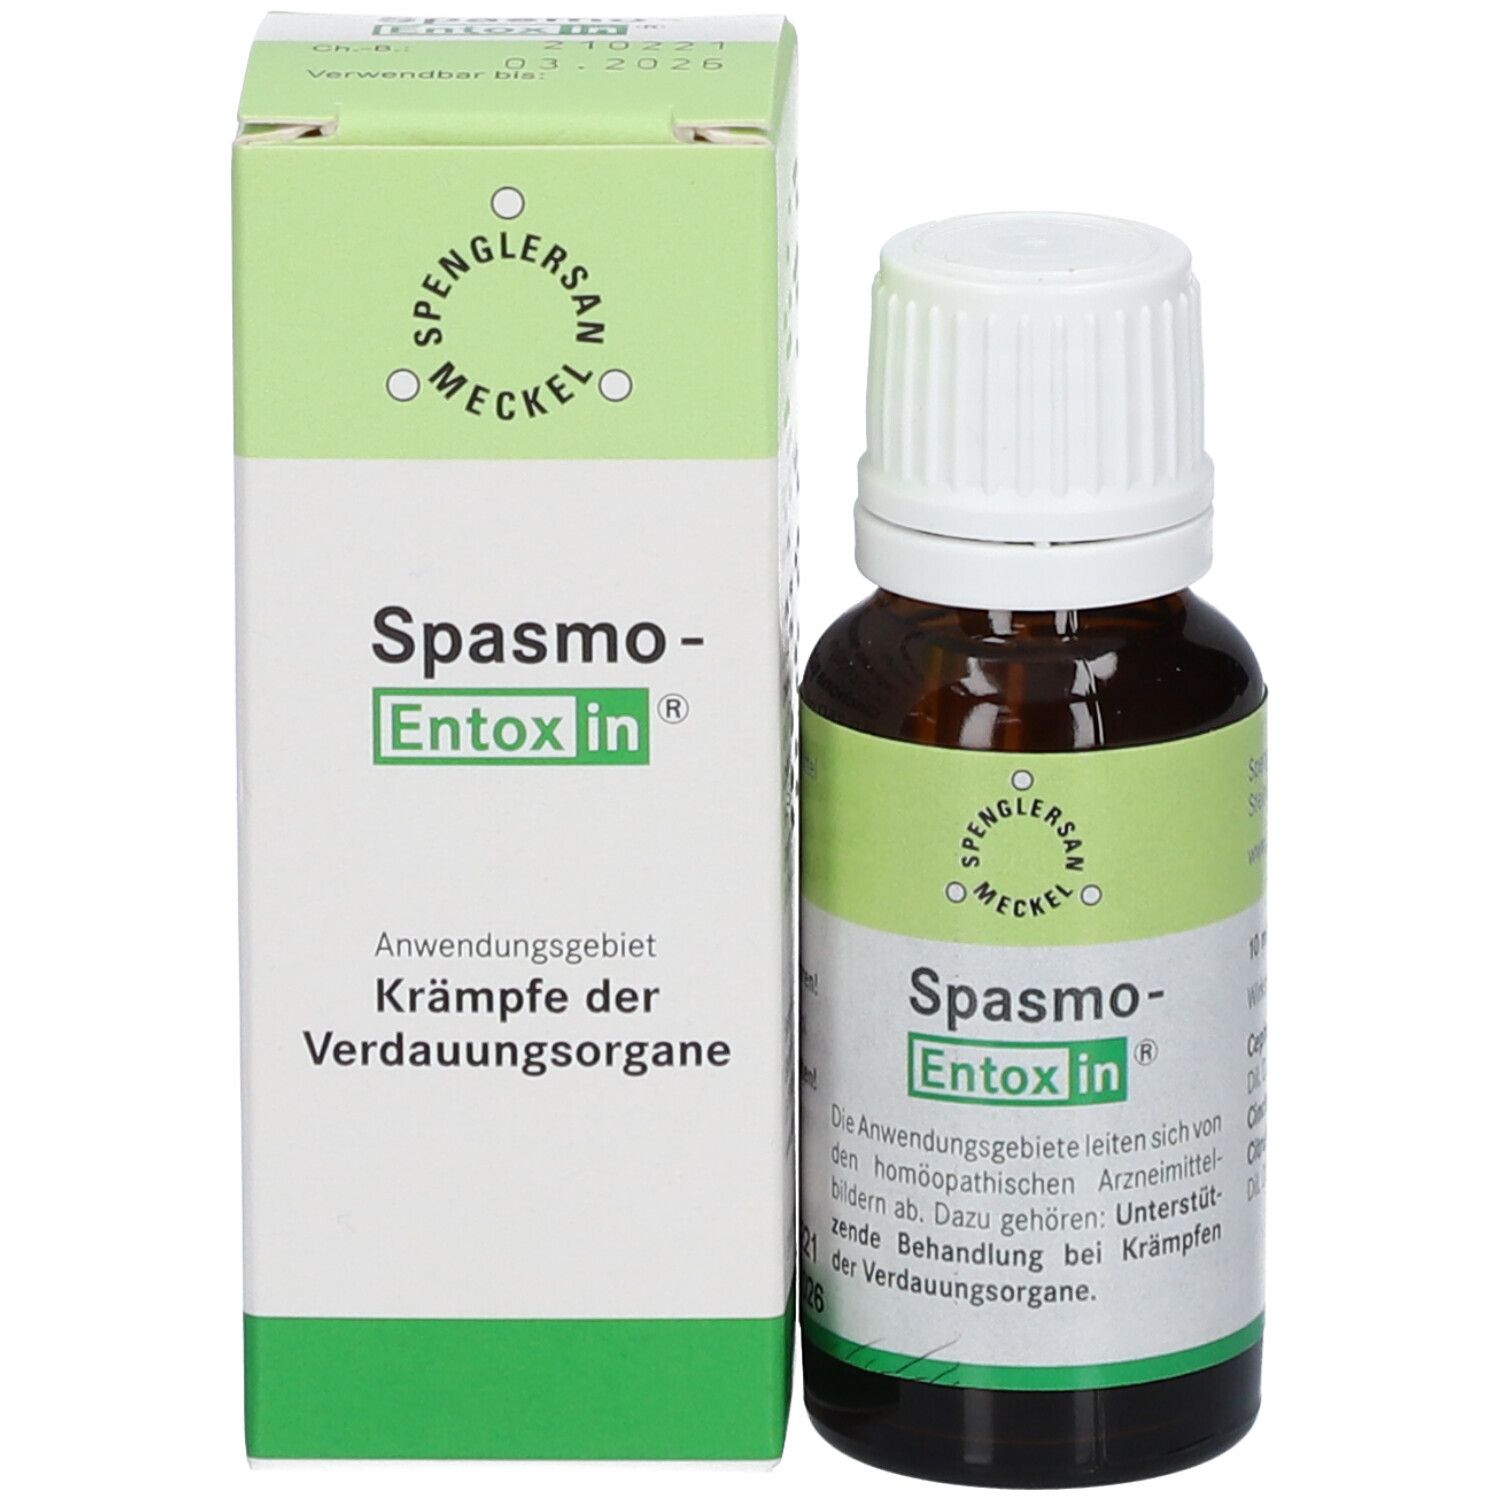 Spasmo-Entoxin®